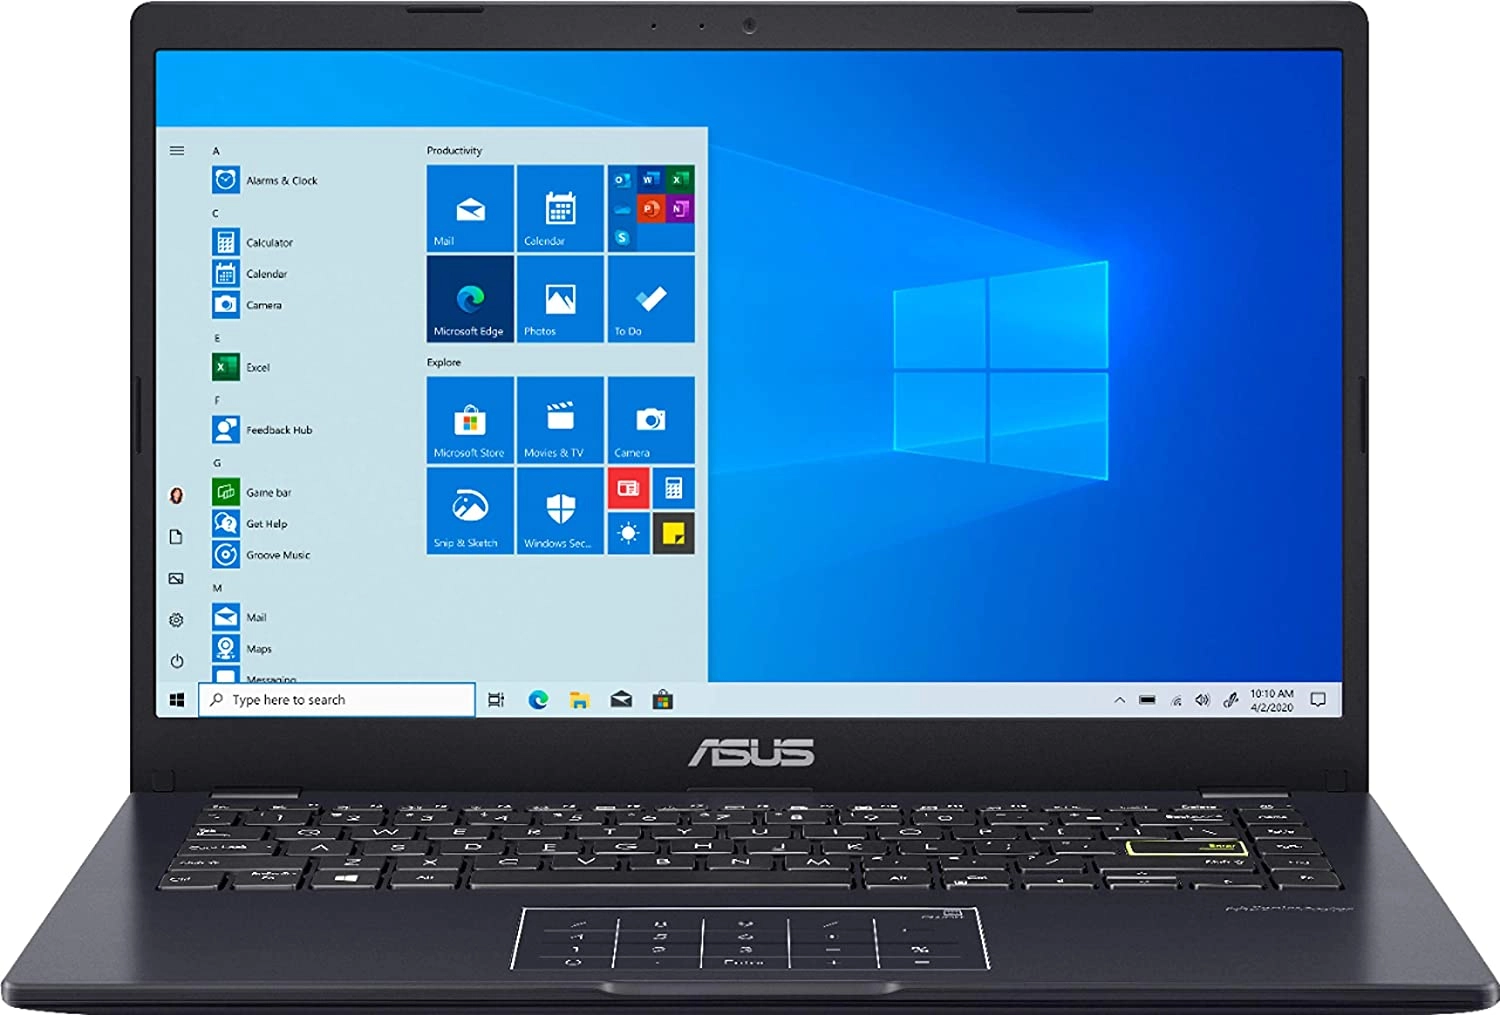 Asus E410M laptop image